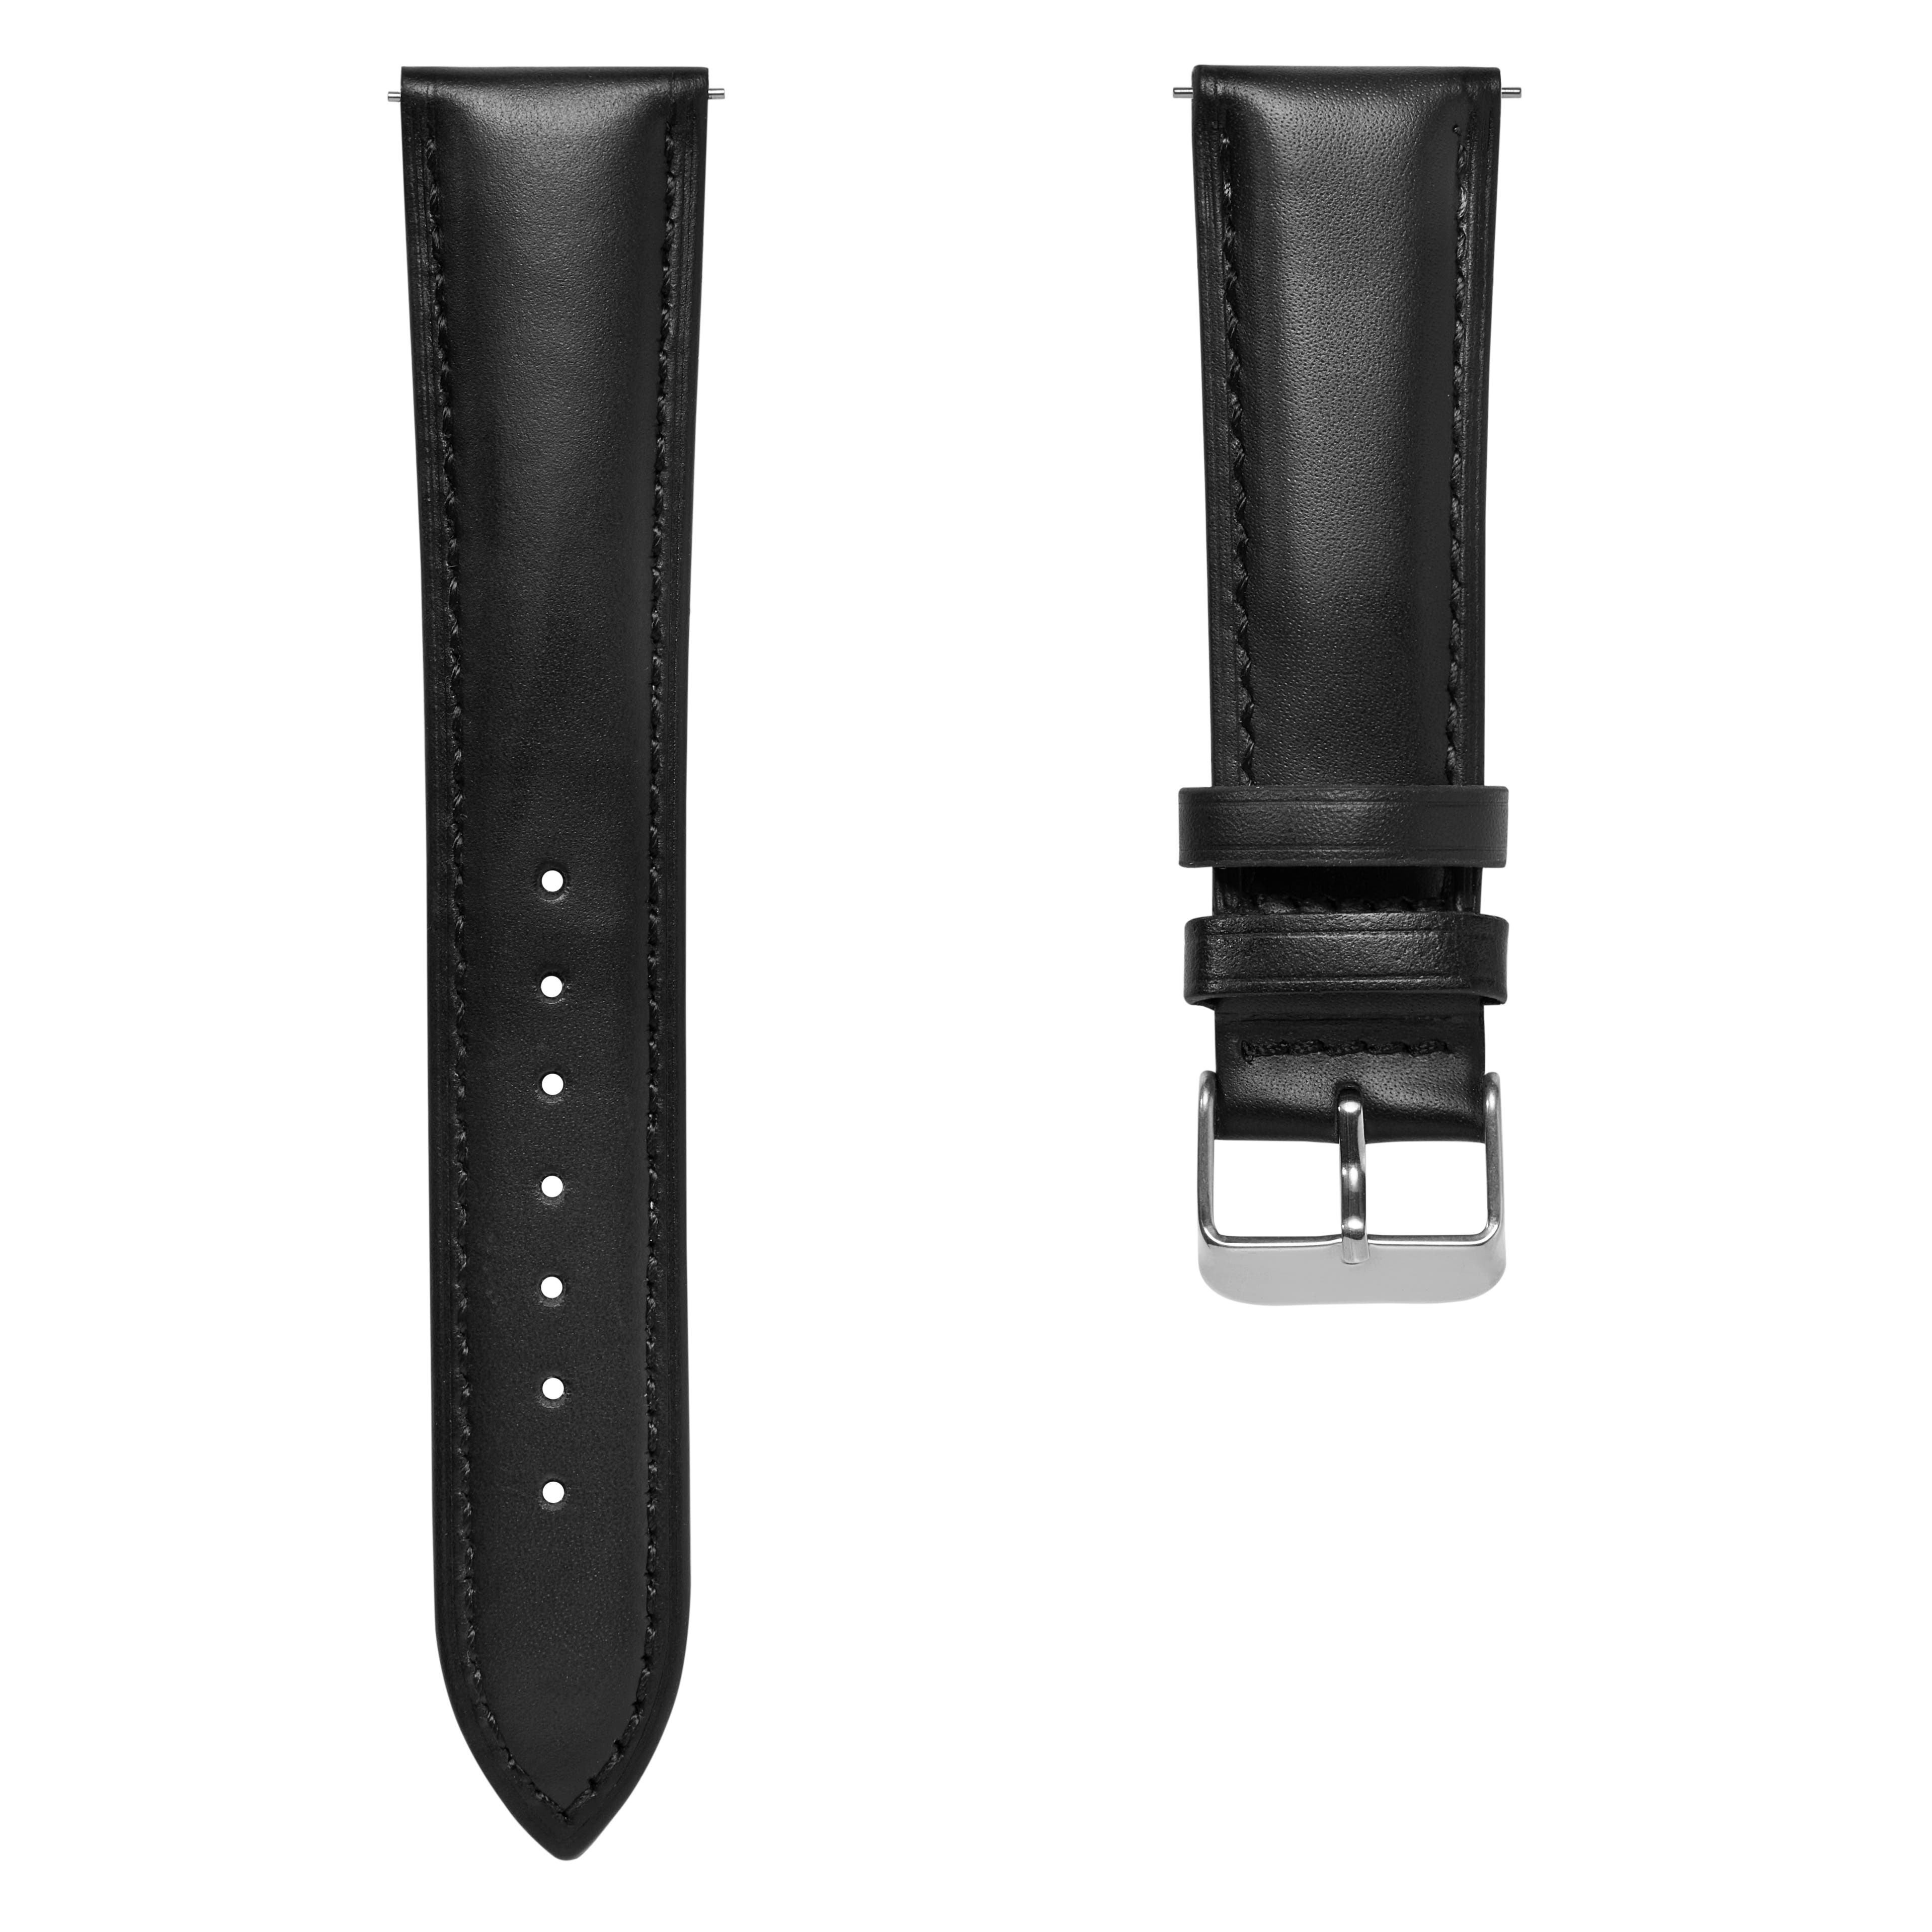 Schwarzes Leder Uhrenarmband 21mm mit silberfarbener Schließe - Schnellverschluss